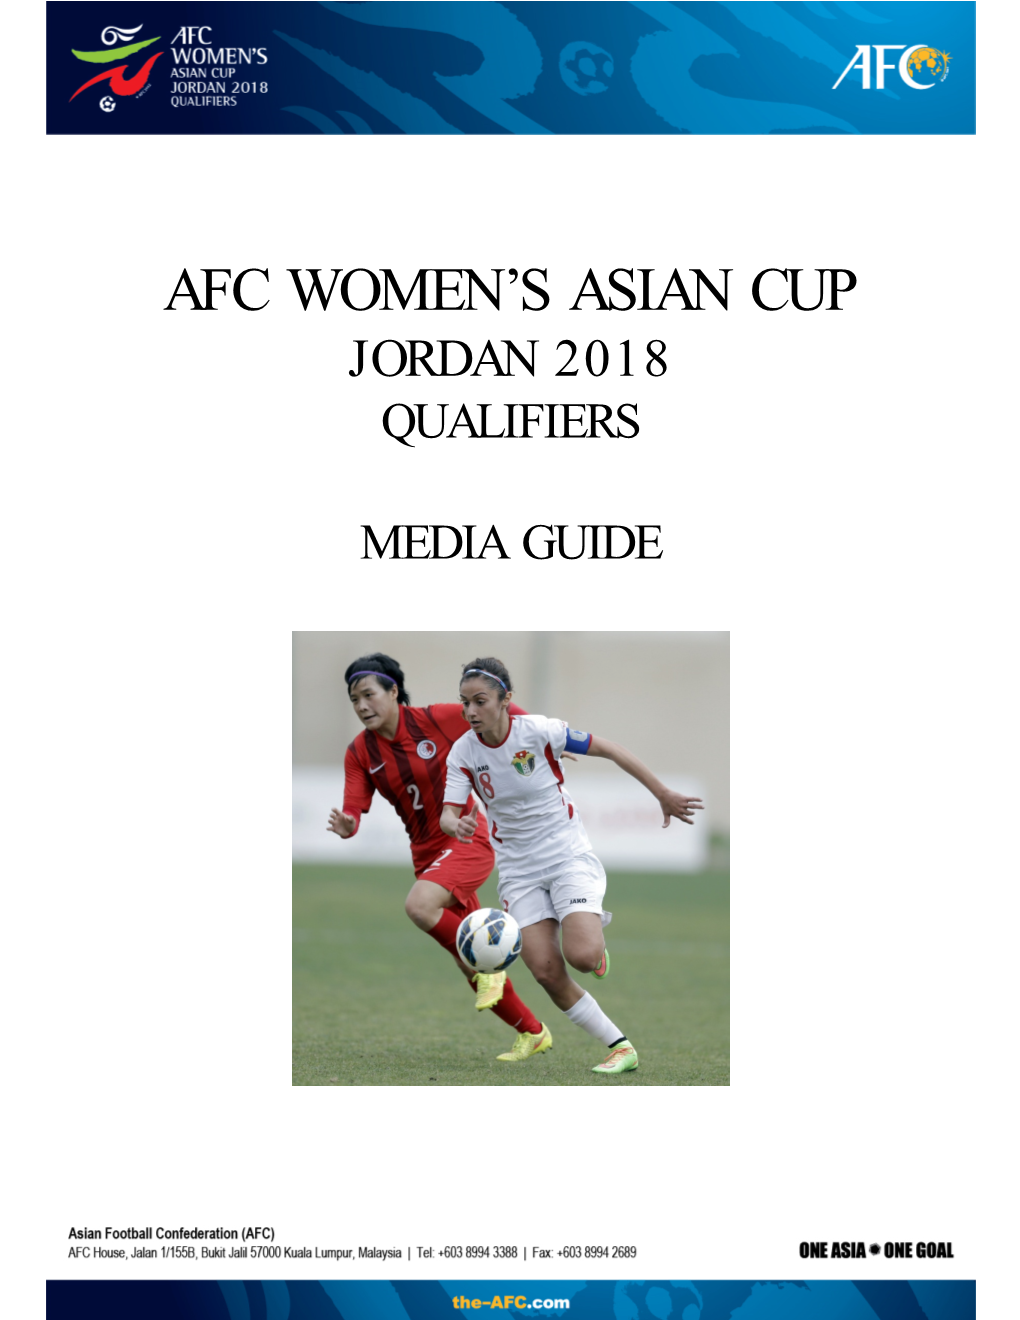 Afc Women's Asian